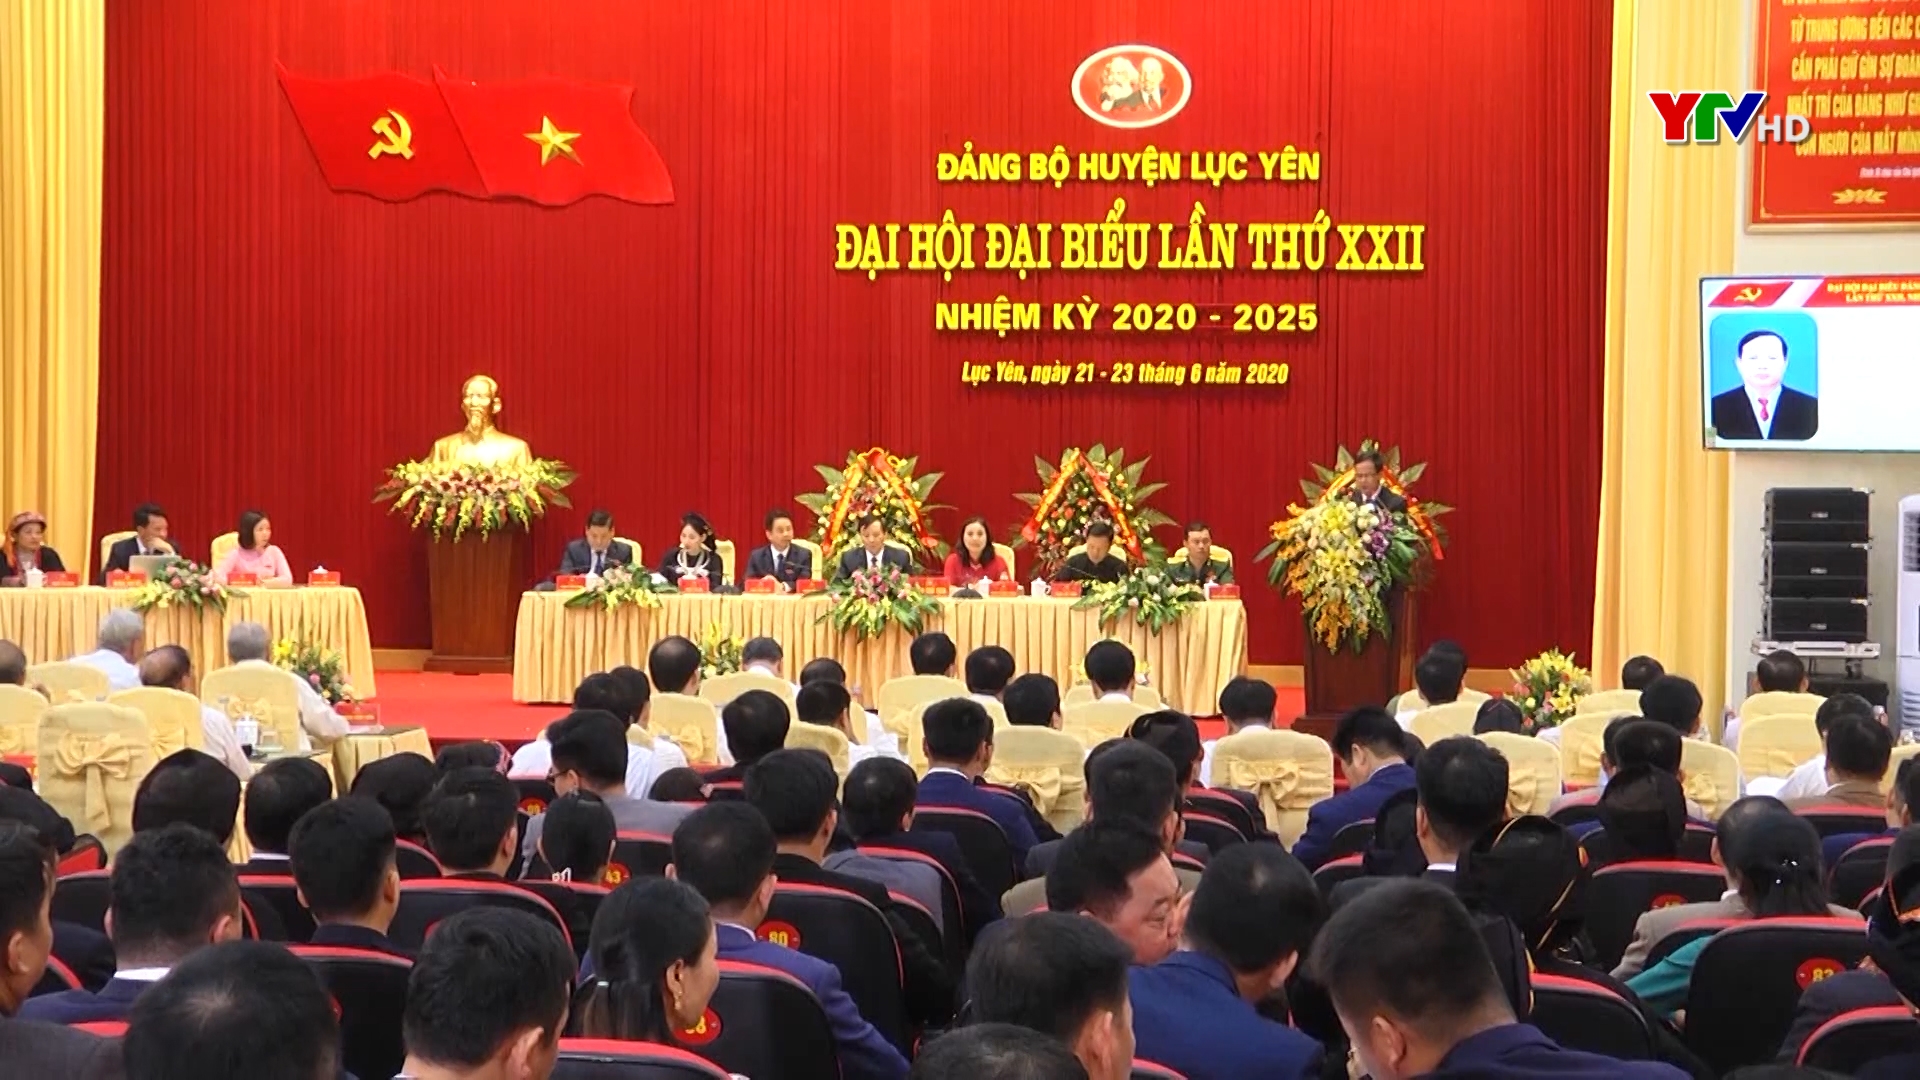 Đại hội đại biểu Đảng bộ huyện Lục Yên lần thứ XXII, nhiệm kỳ 2020 - 2025